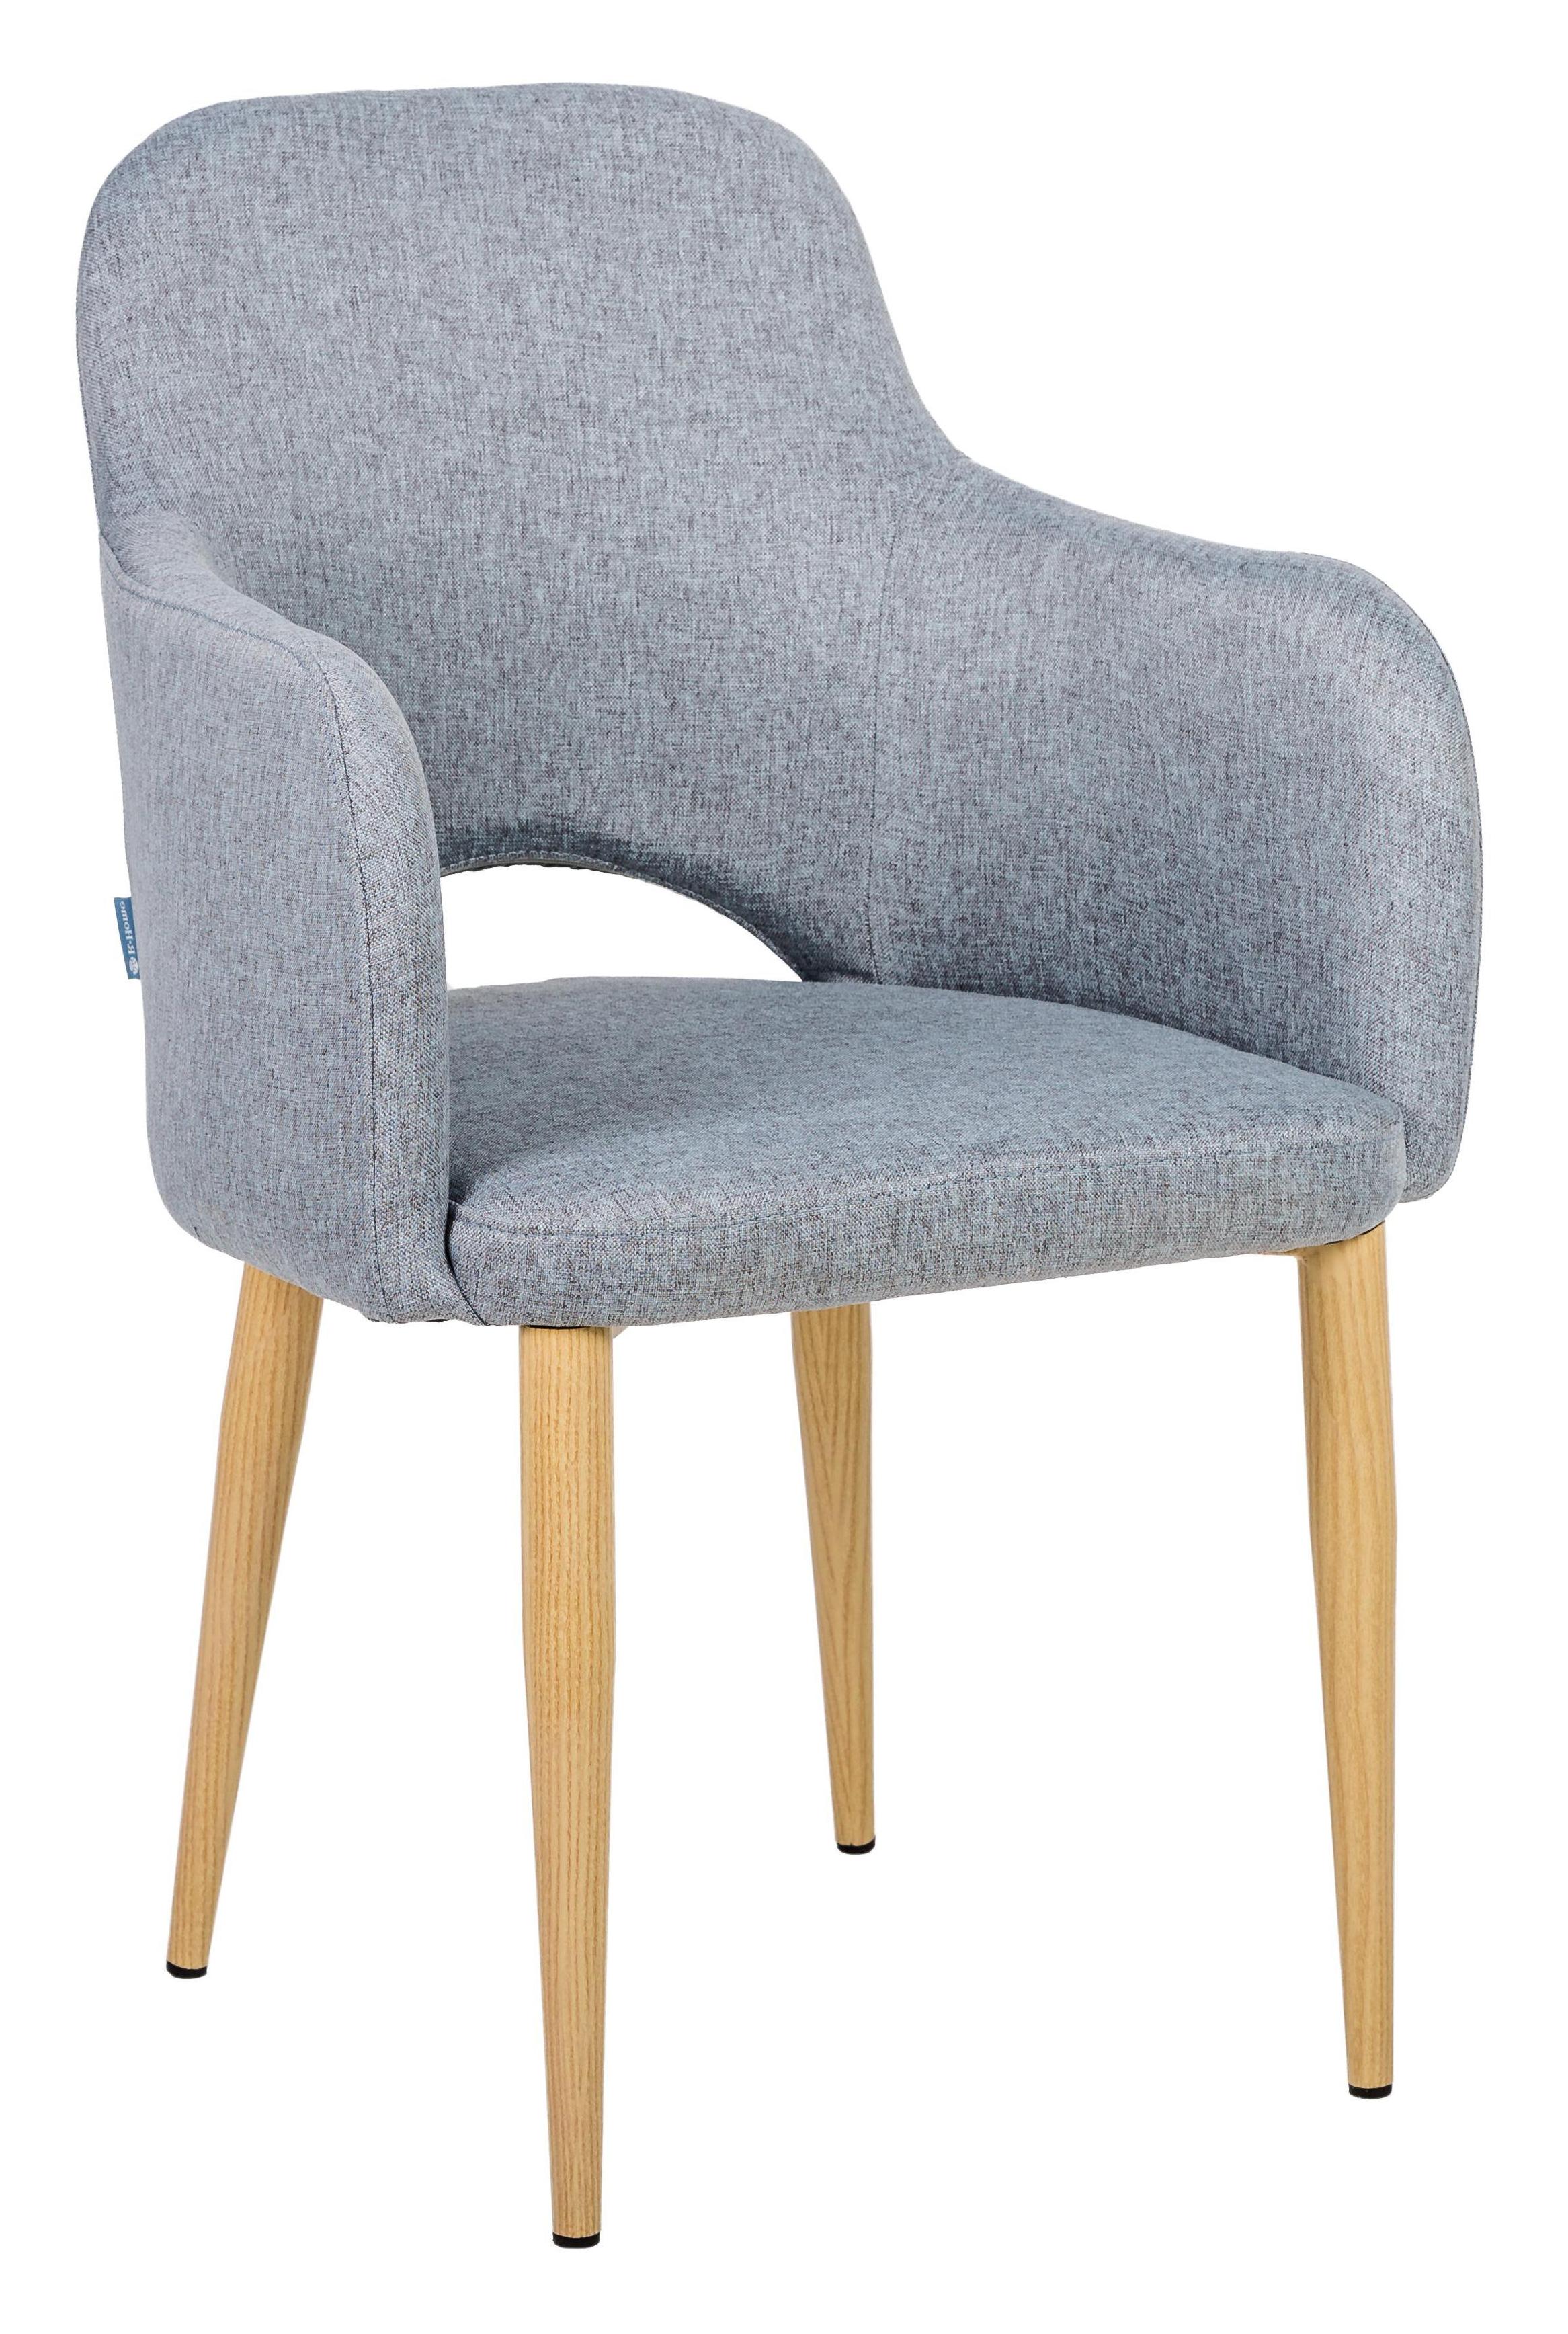 Кресло R-Home Ledger, Сканди, размер 56.5x60.5x87.5 см, цвет: Грей Ндуб(41012440_ГрейНДуб)41012440_ГрейНДуб